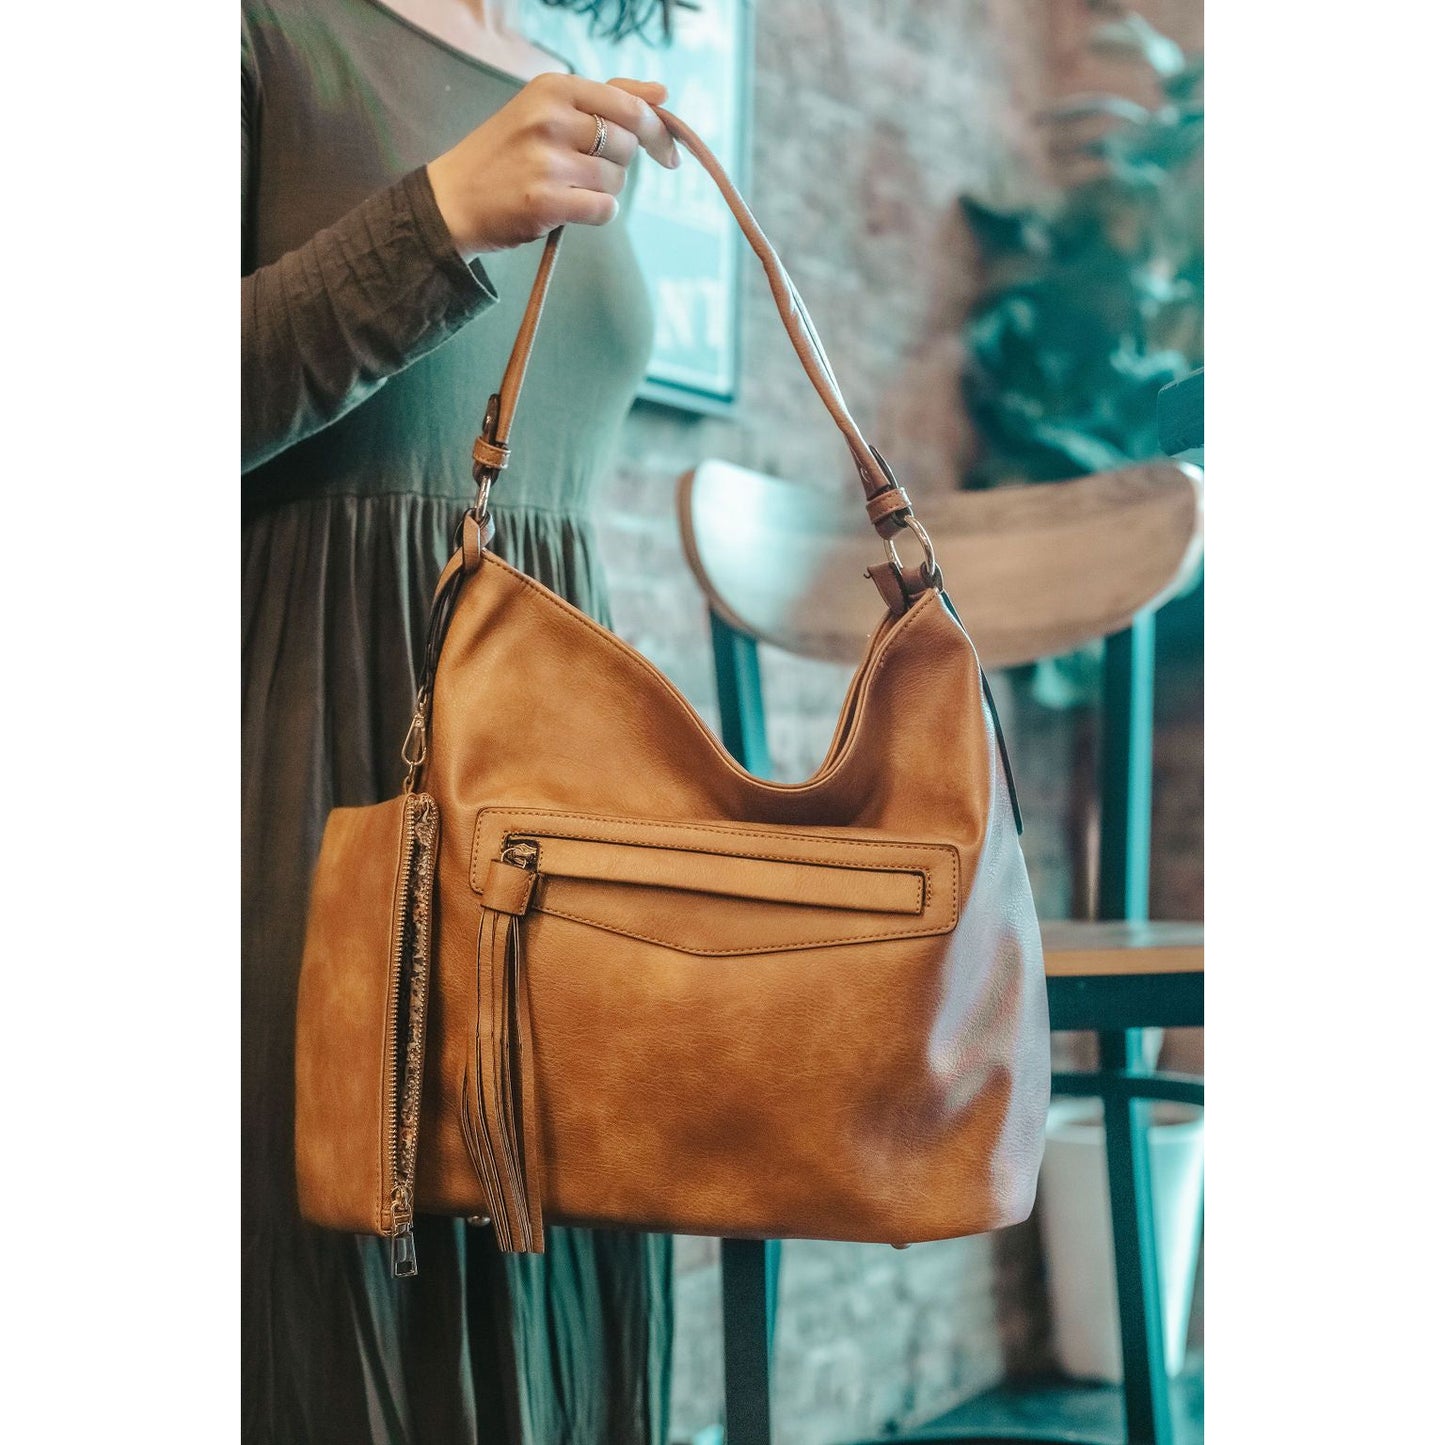 Eliza Hobo Shoulder Bag & Clutch Set (2 color options!)